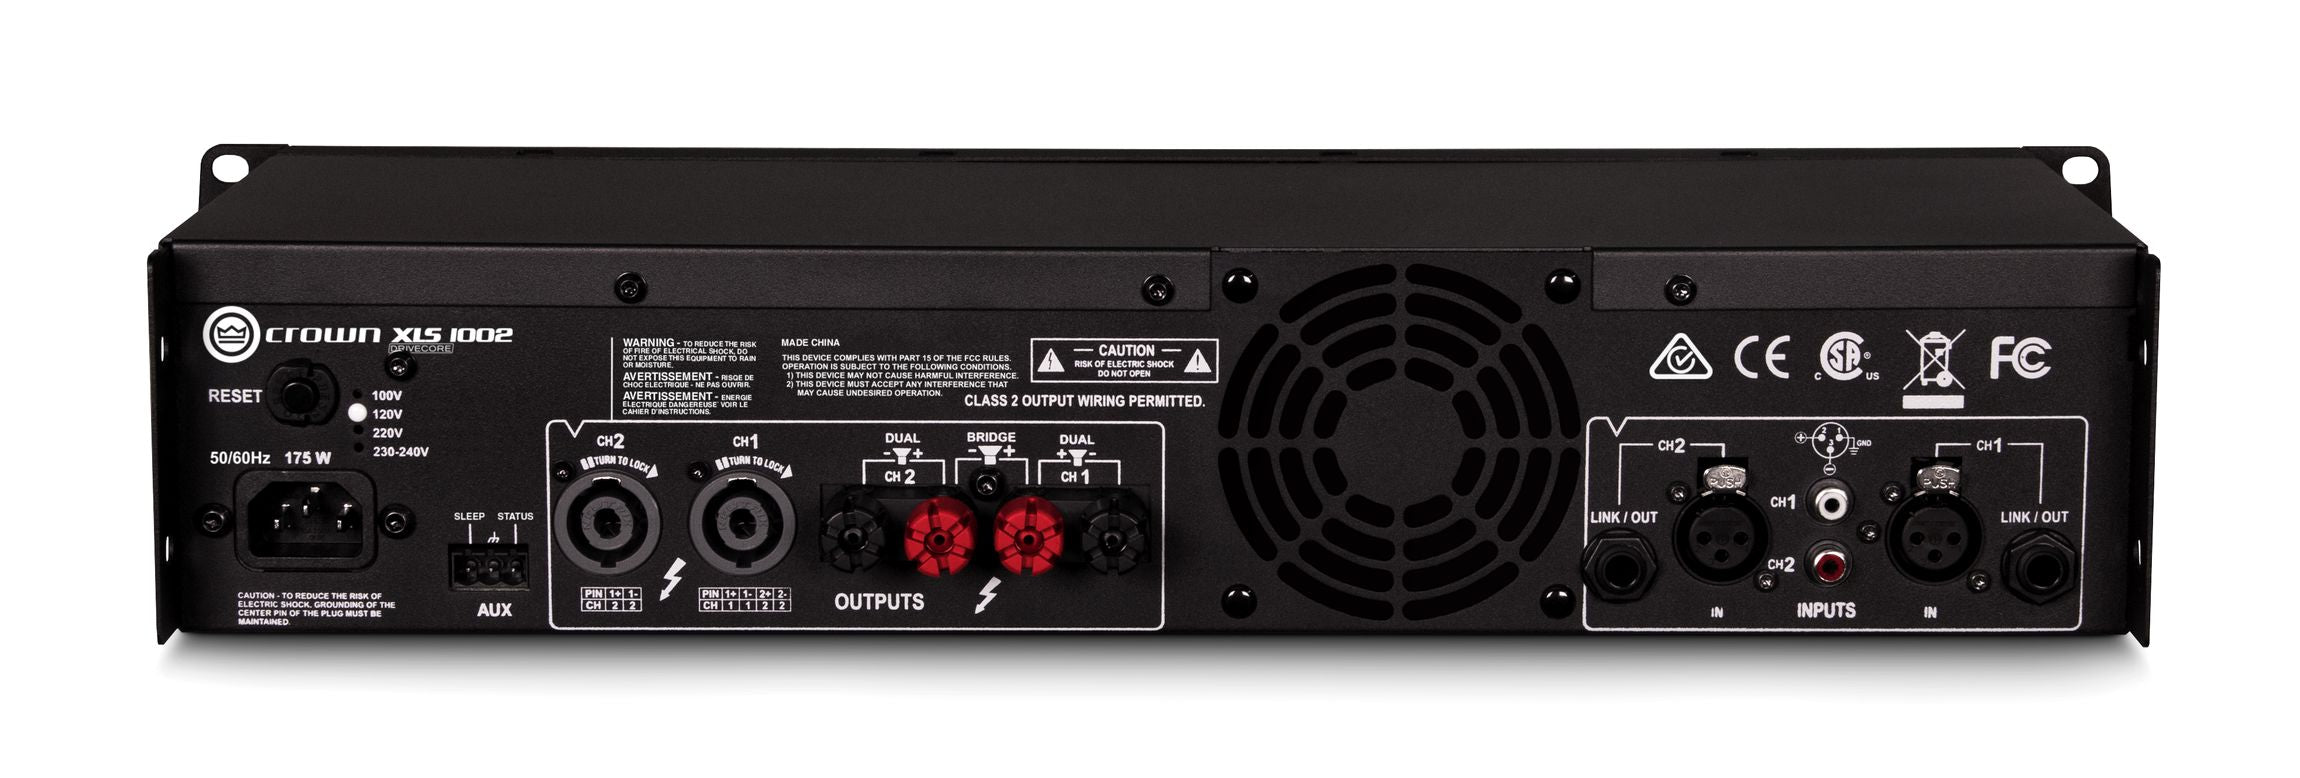 Crown Audio XLS1002 Drivecore - Power Amps - Professional Audio Design, Inc